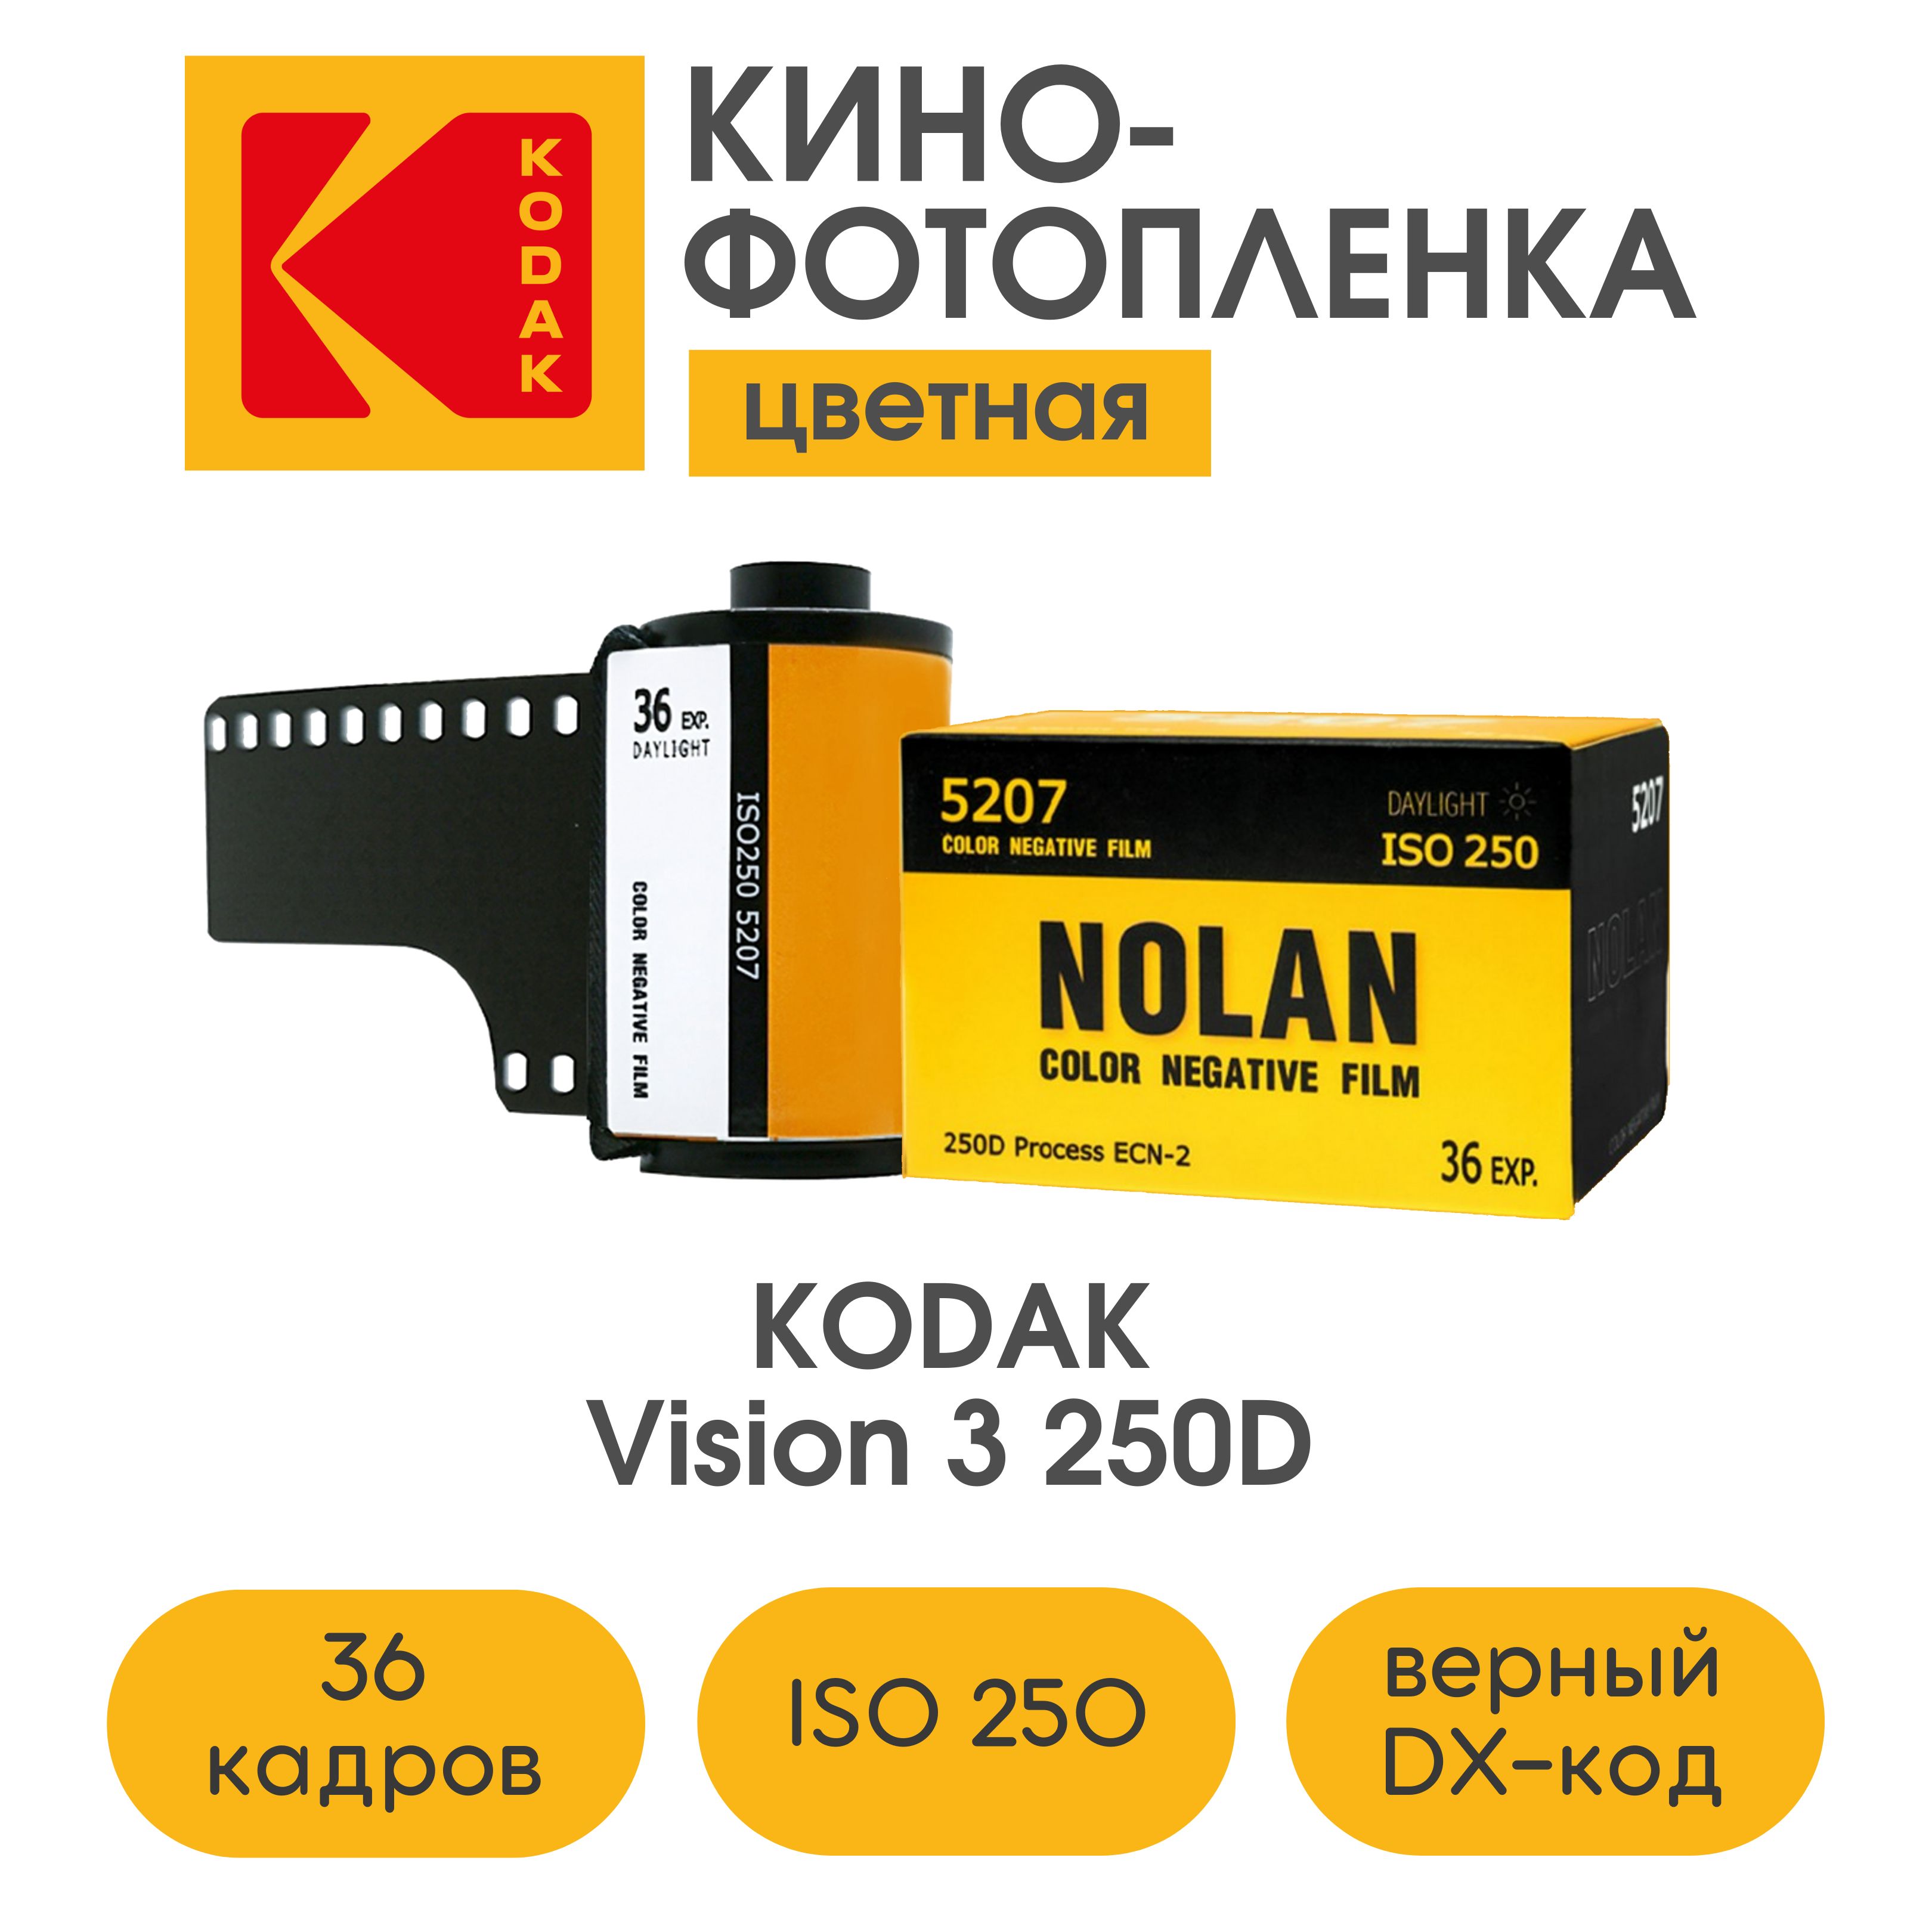 киношная фотопленка kodak vision 3 250d в nolan film, iso 250, 36 кадров, кино